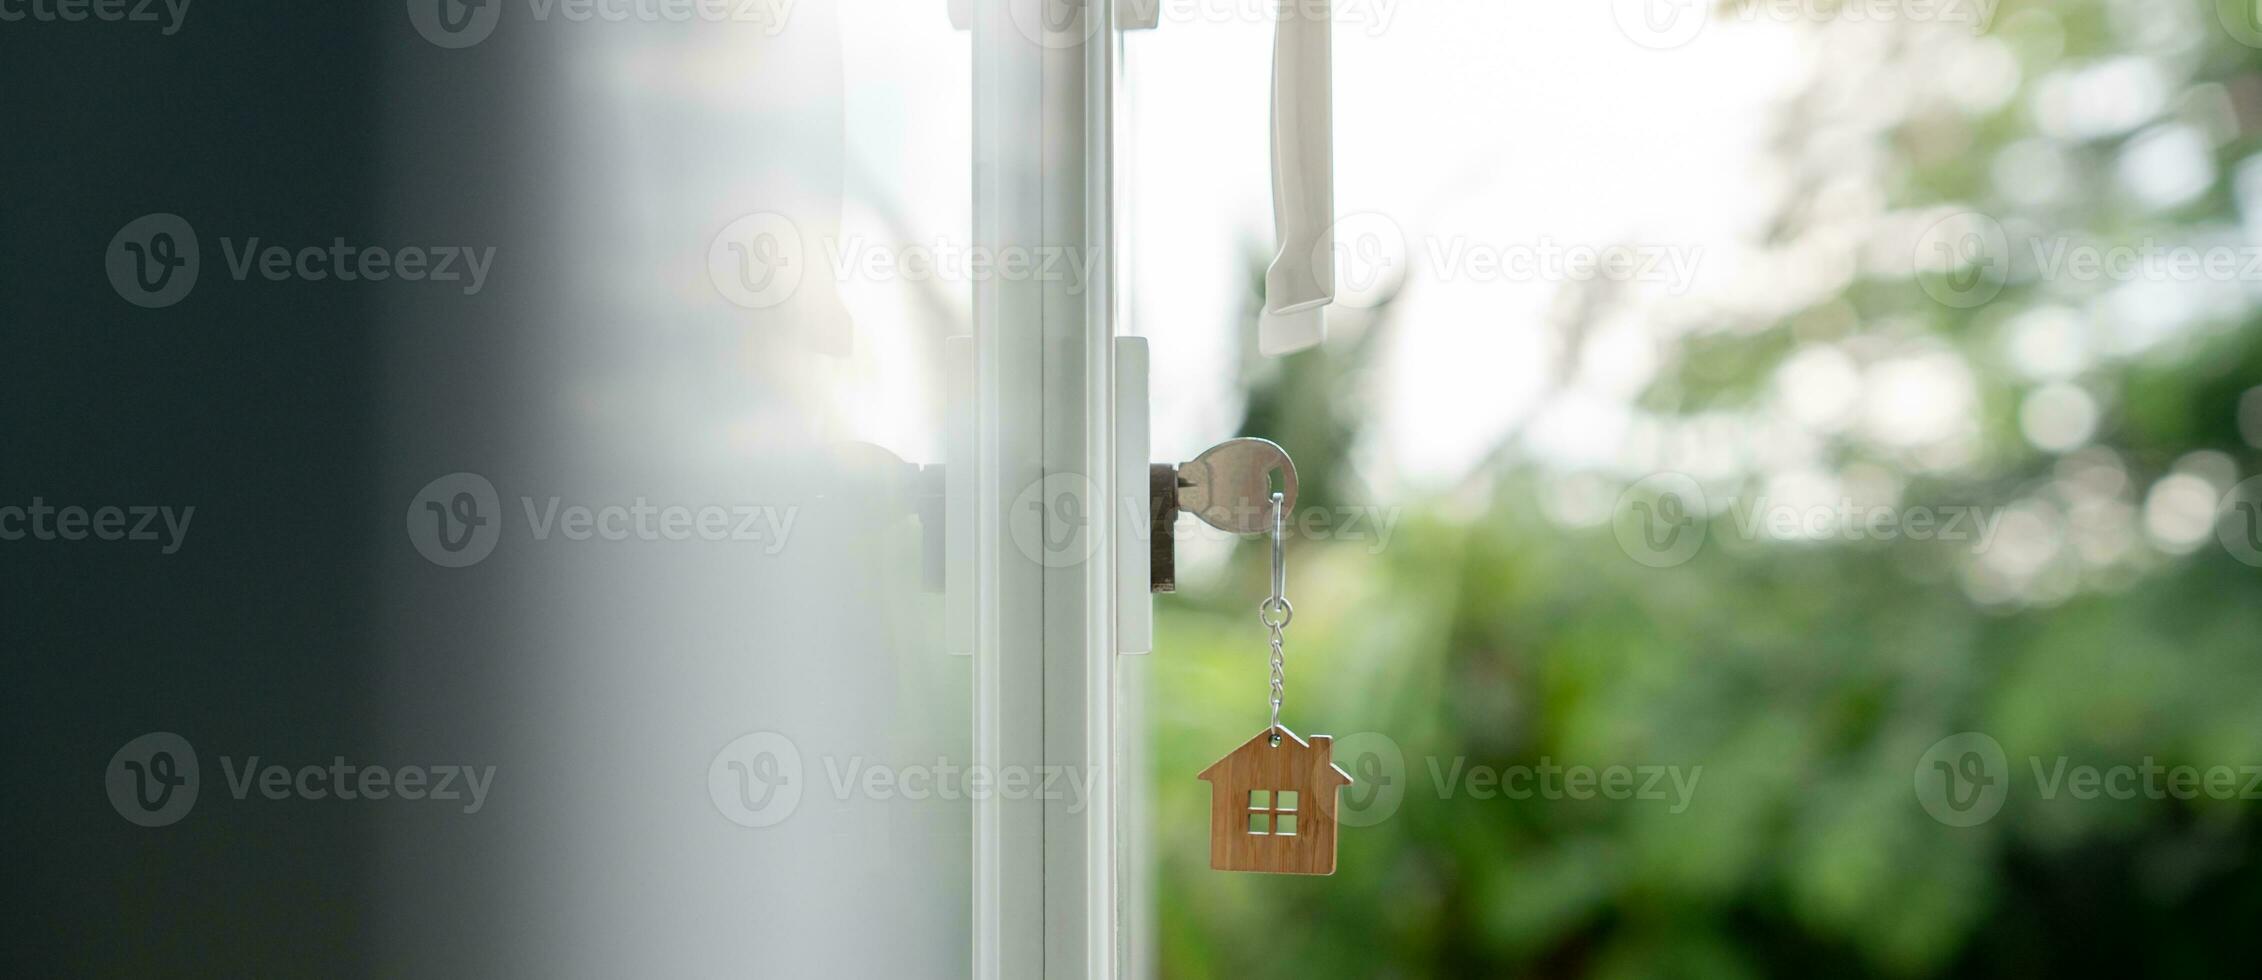 la clé du propriétaire pour déverrouiller la maison est branchée sur la porte. maison d'occasion à louer et à vendre. porte-clés souffle dans le vent. hypothèque pour maison neuve, acheter, vendre, rénover, investissement, propriétaire, immobilier photo